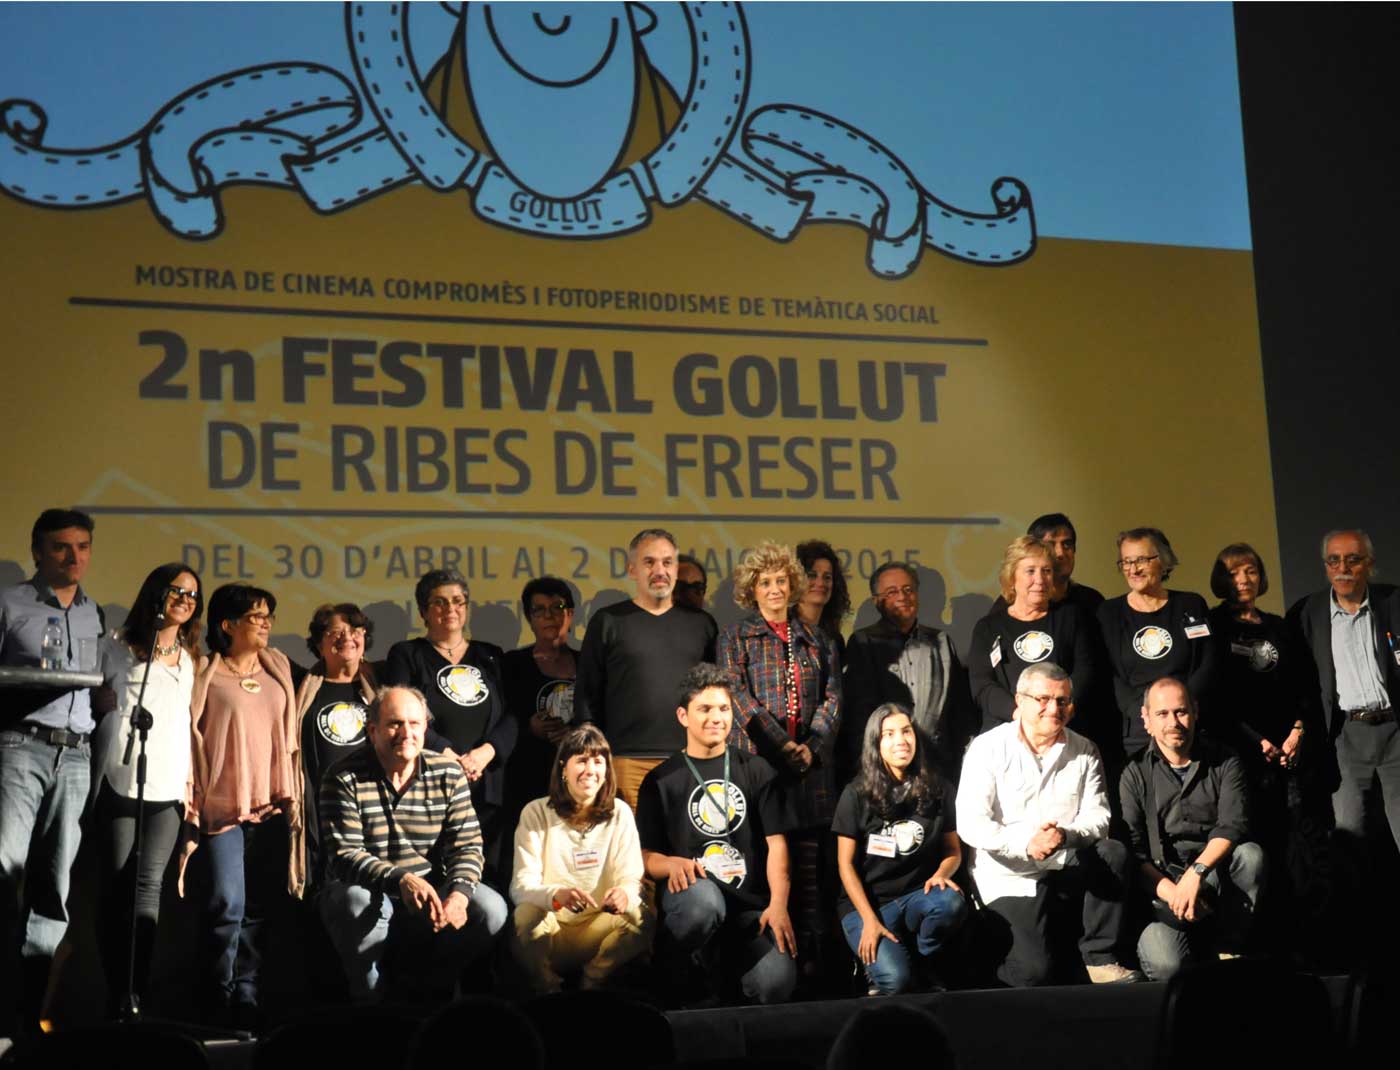 Festival Gollut. Muestra de cine comprometido, medio ambiente, montaña y fotoperiodismo fundamentado en la cultura popular.